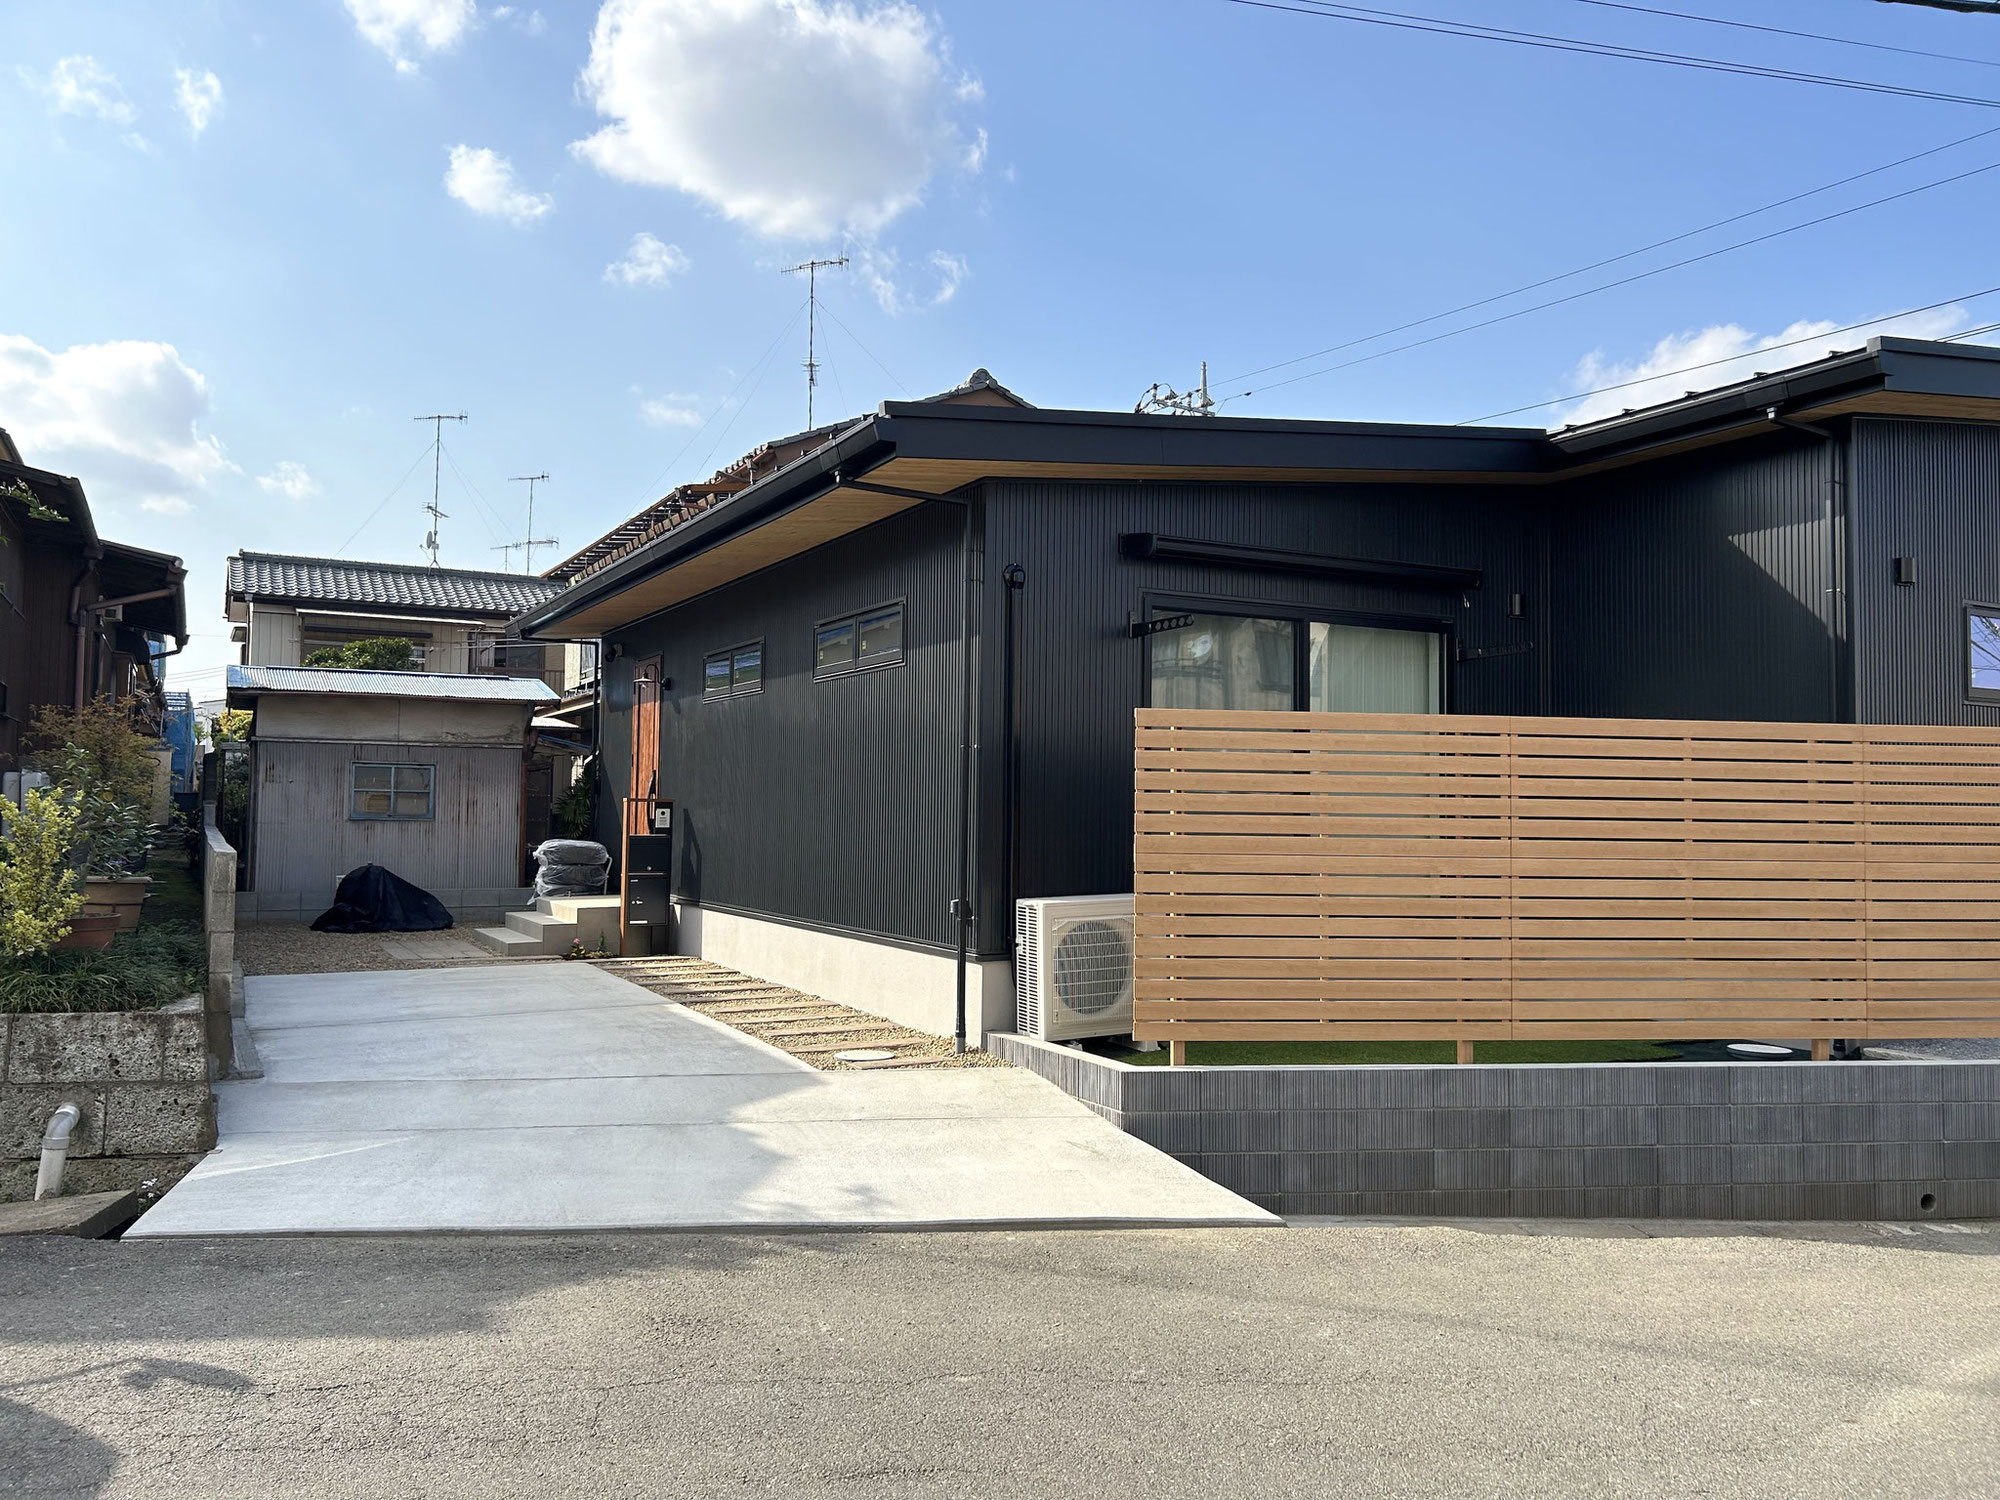 無垢な家 擁壁用デザインブロックでしっかり土留【埼玉県】